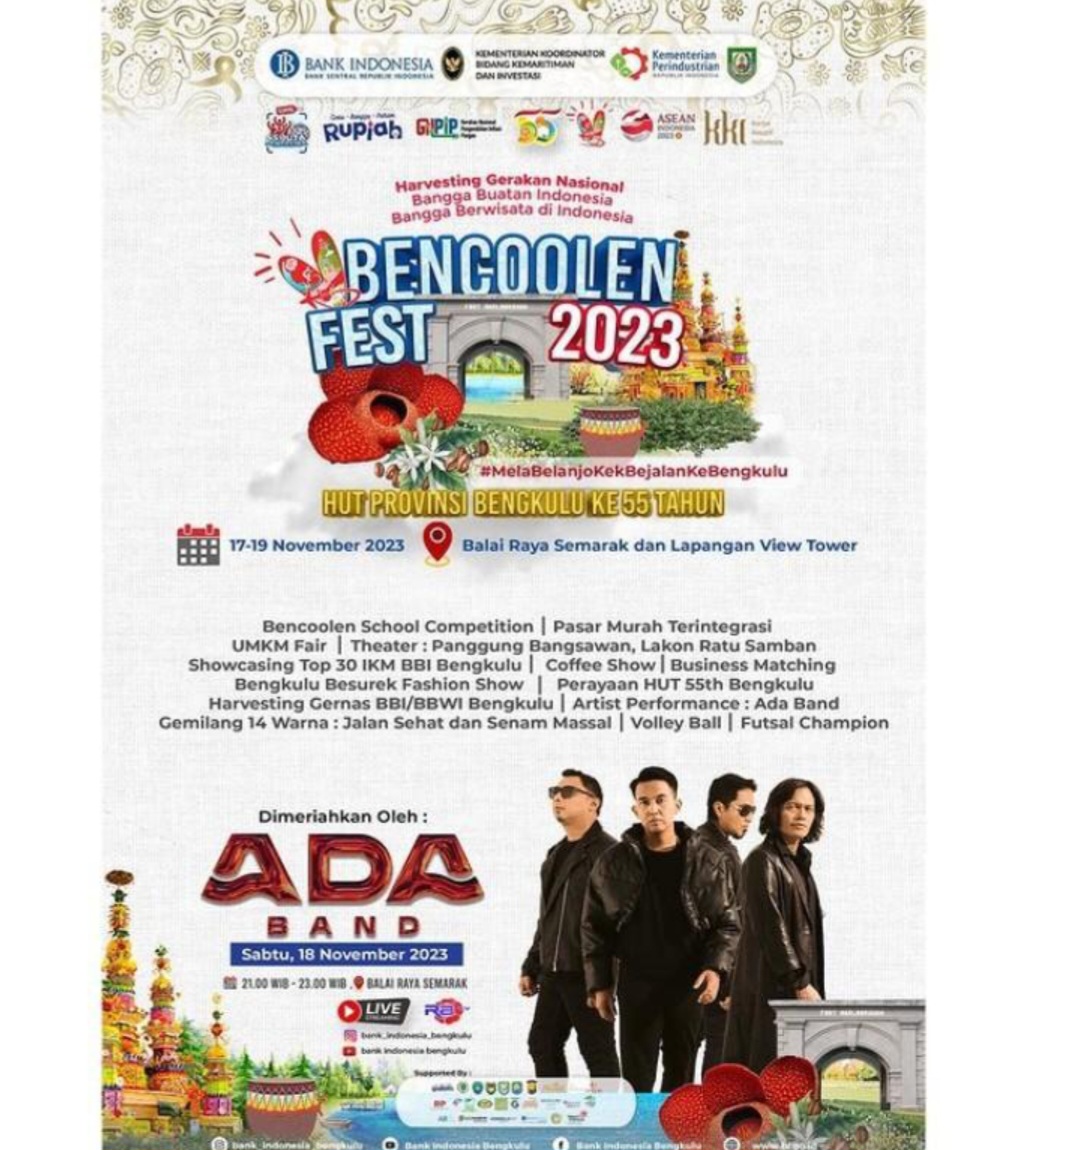 Jangan Lupa, Saksikan Penampilan Ada Band di Malam Puncak Event Bencoolen Fest 2023